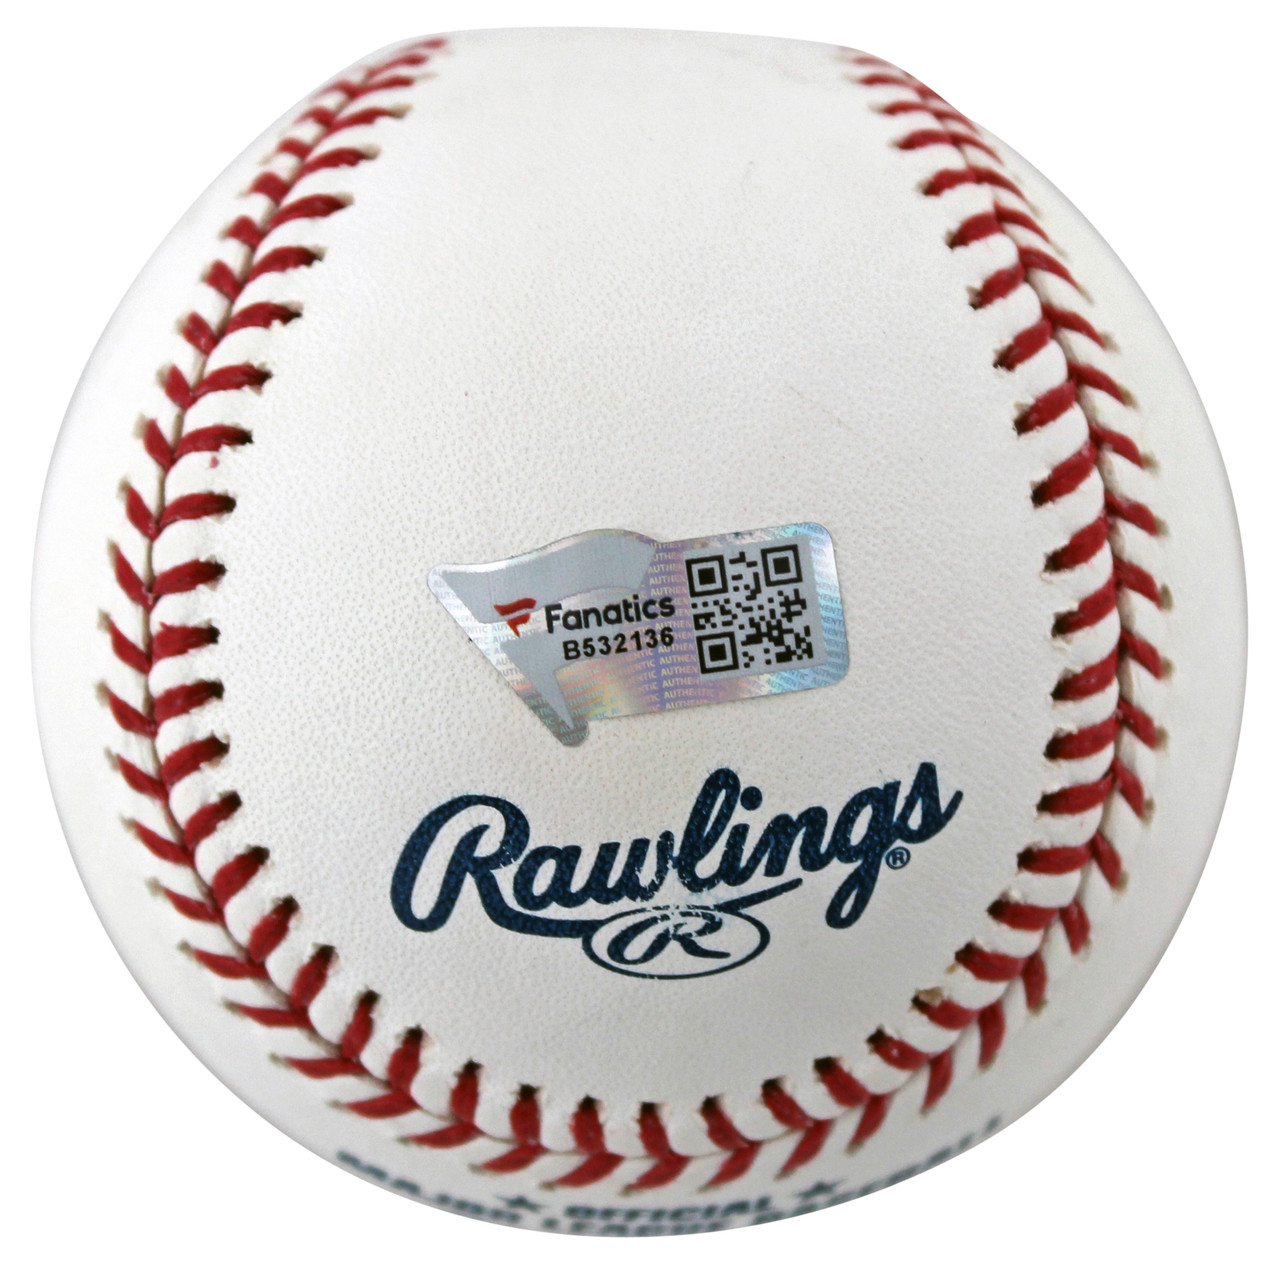 Jack Leiter Autographed MLB Baseball - Fanatics Authentication